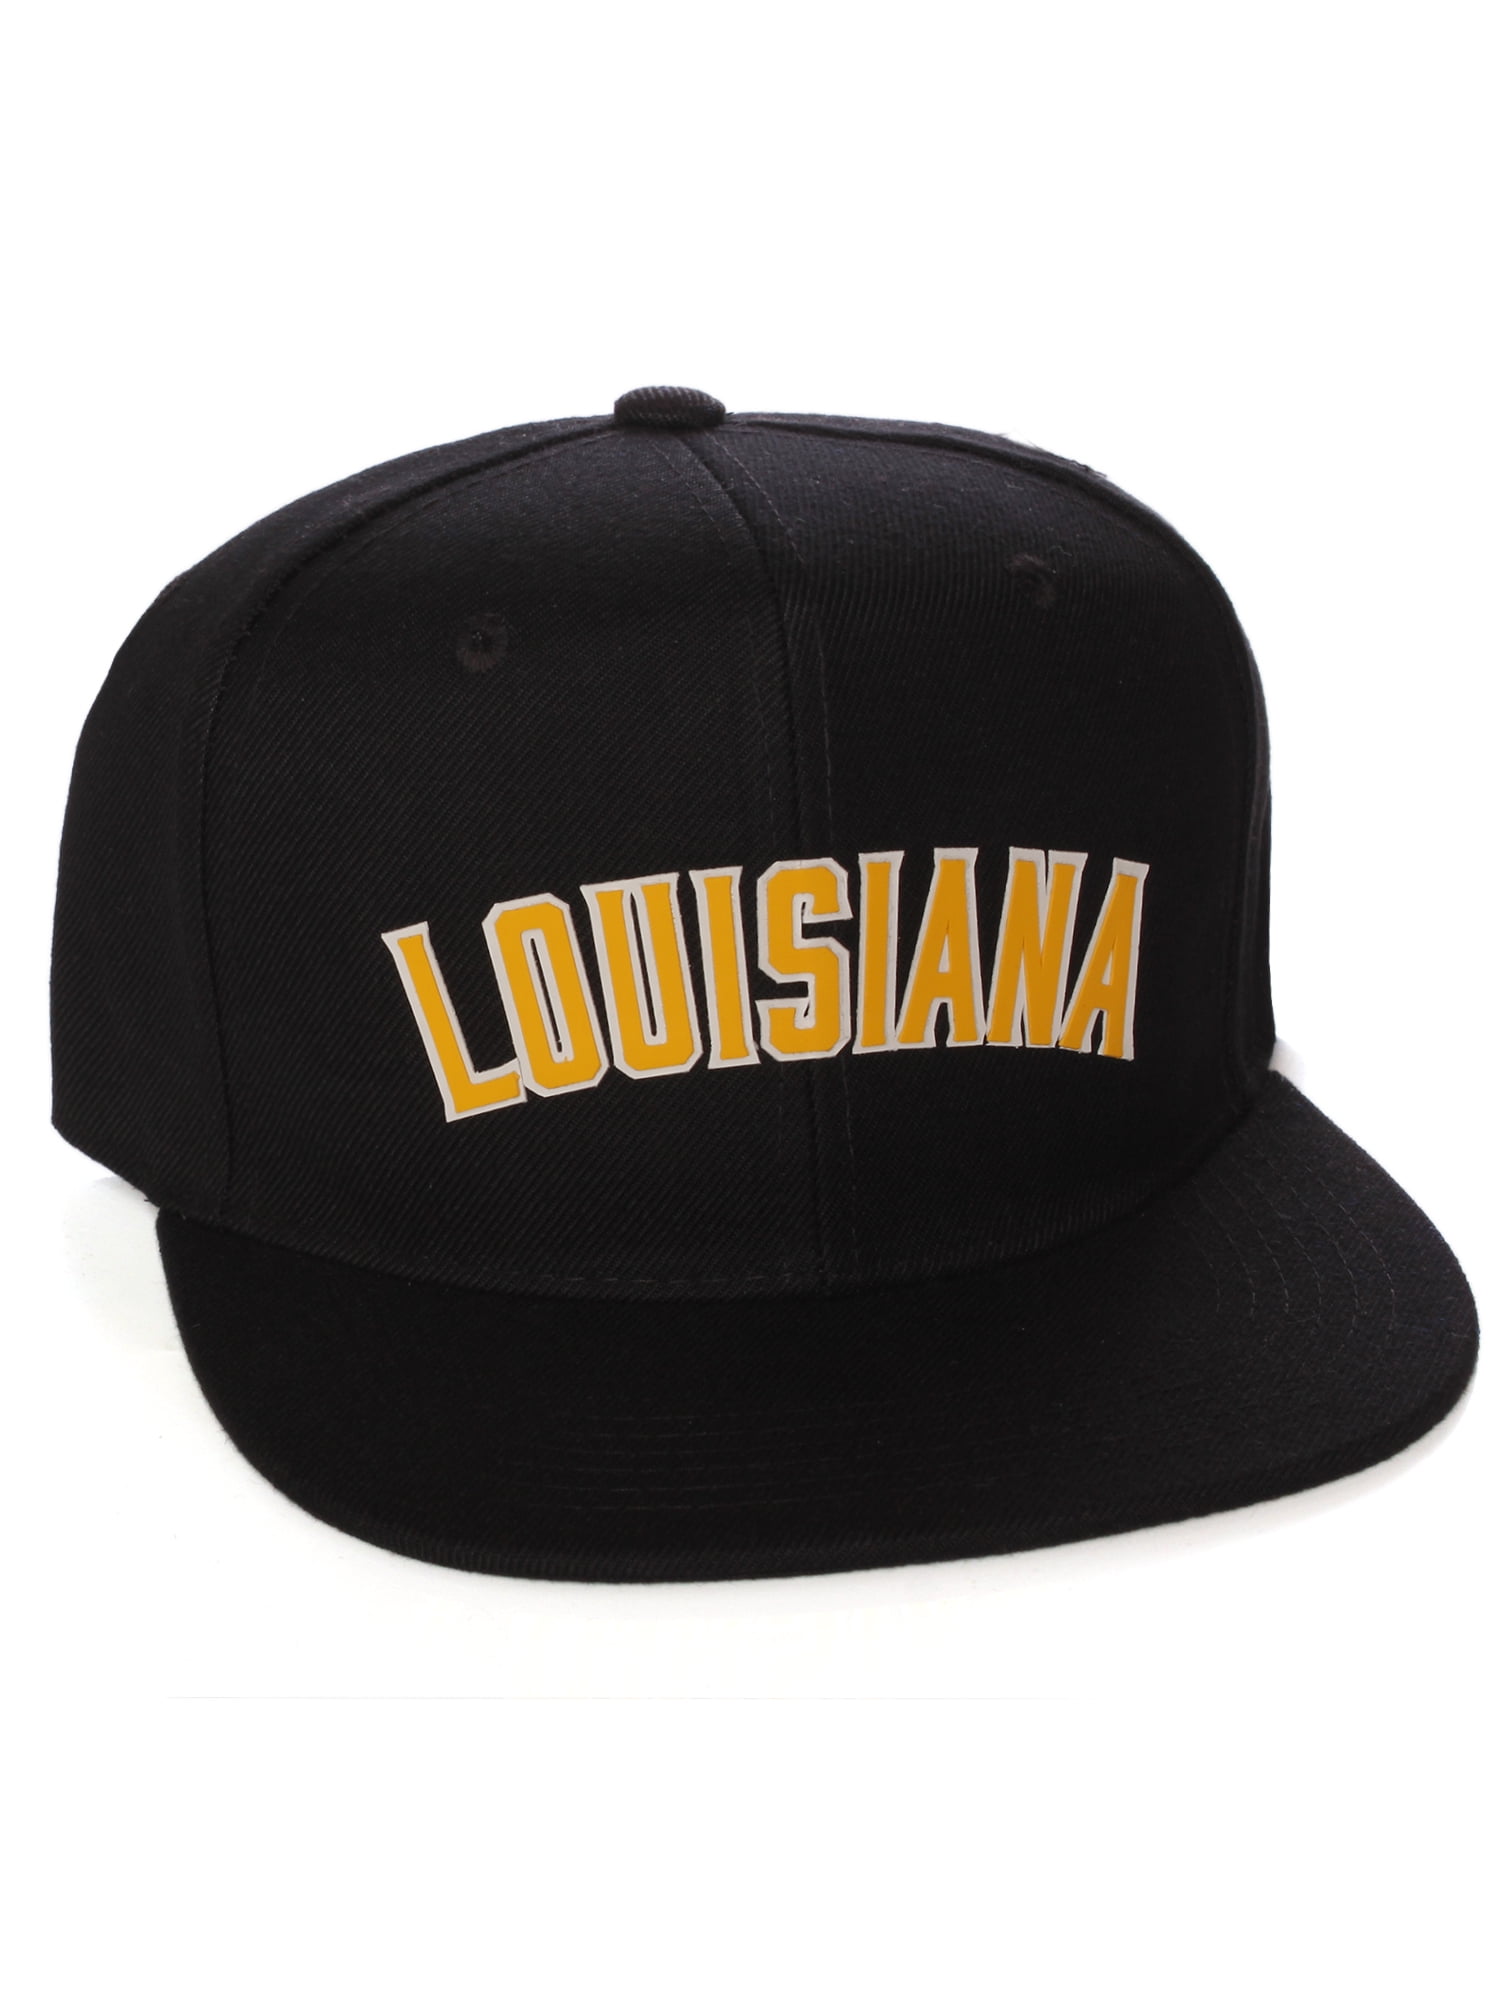 Louisiana Trucker Hat Embroidered Snapback Louisiana Cap